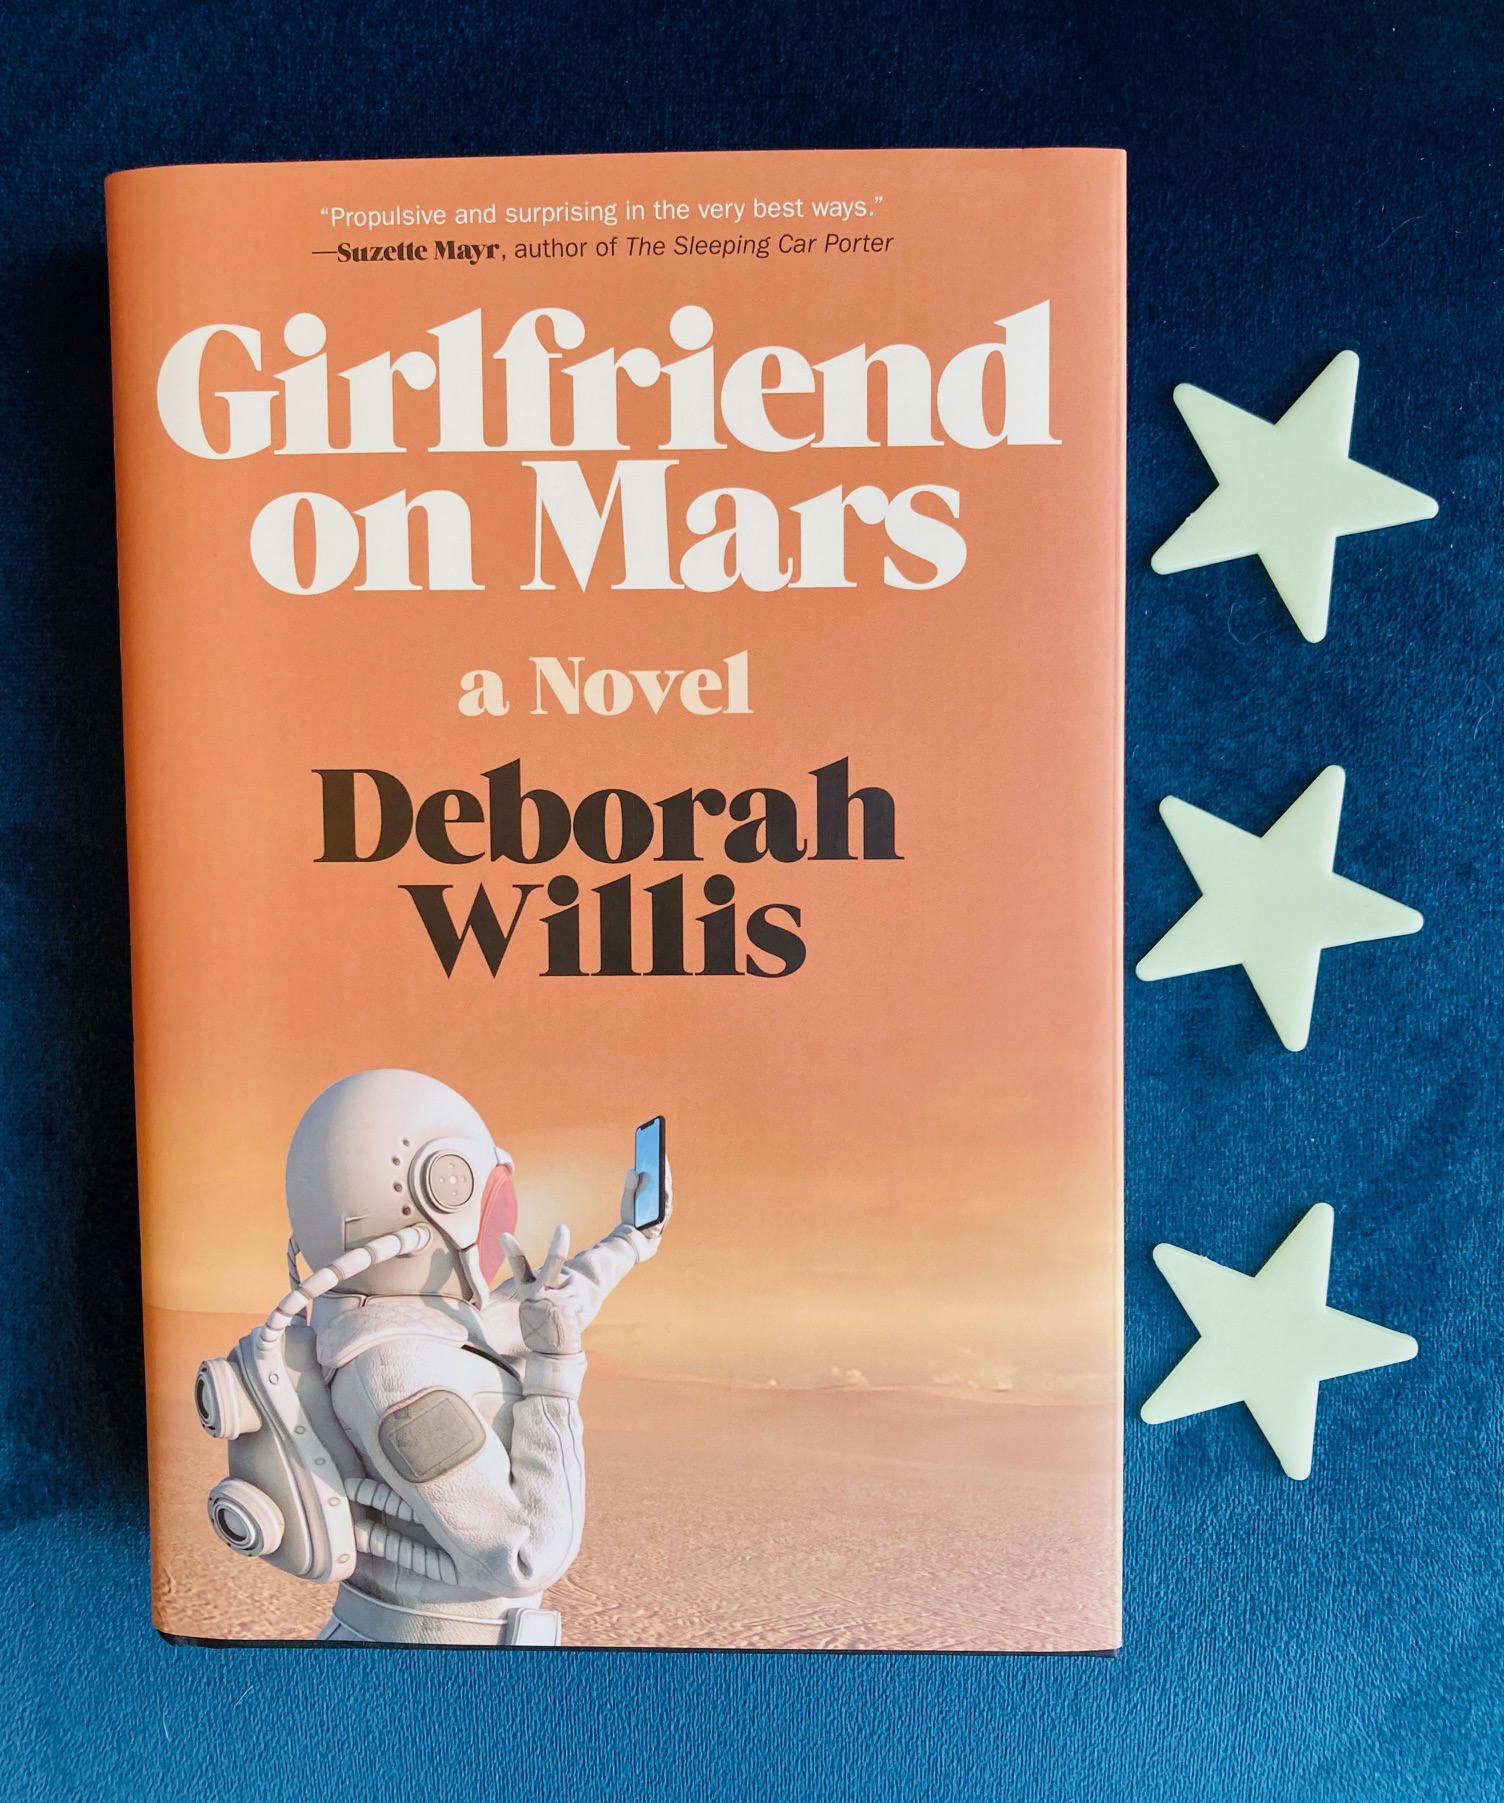 Girlfriend on Mars by Deborah Willis book